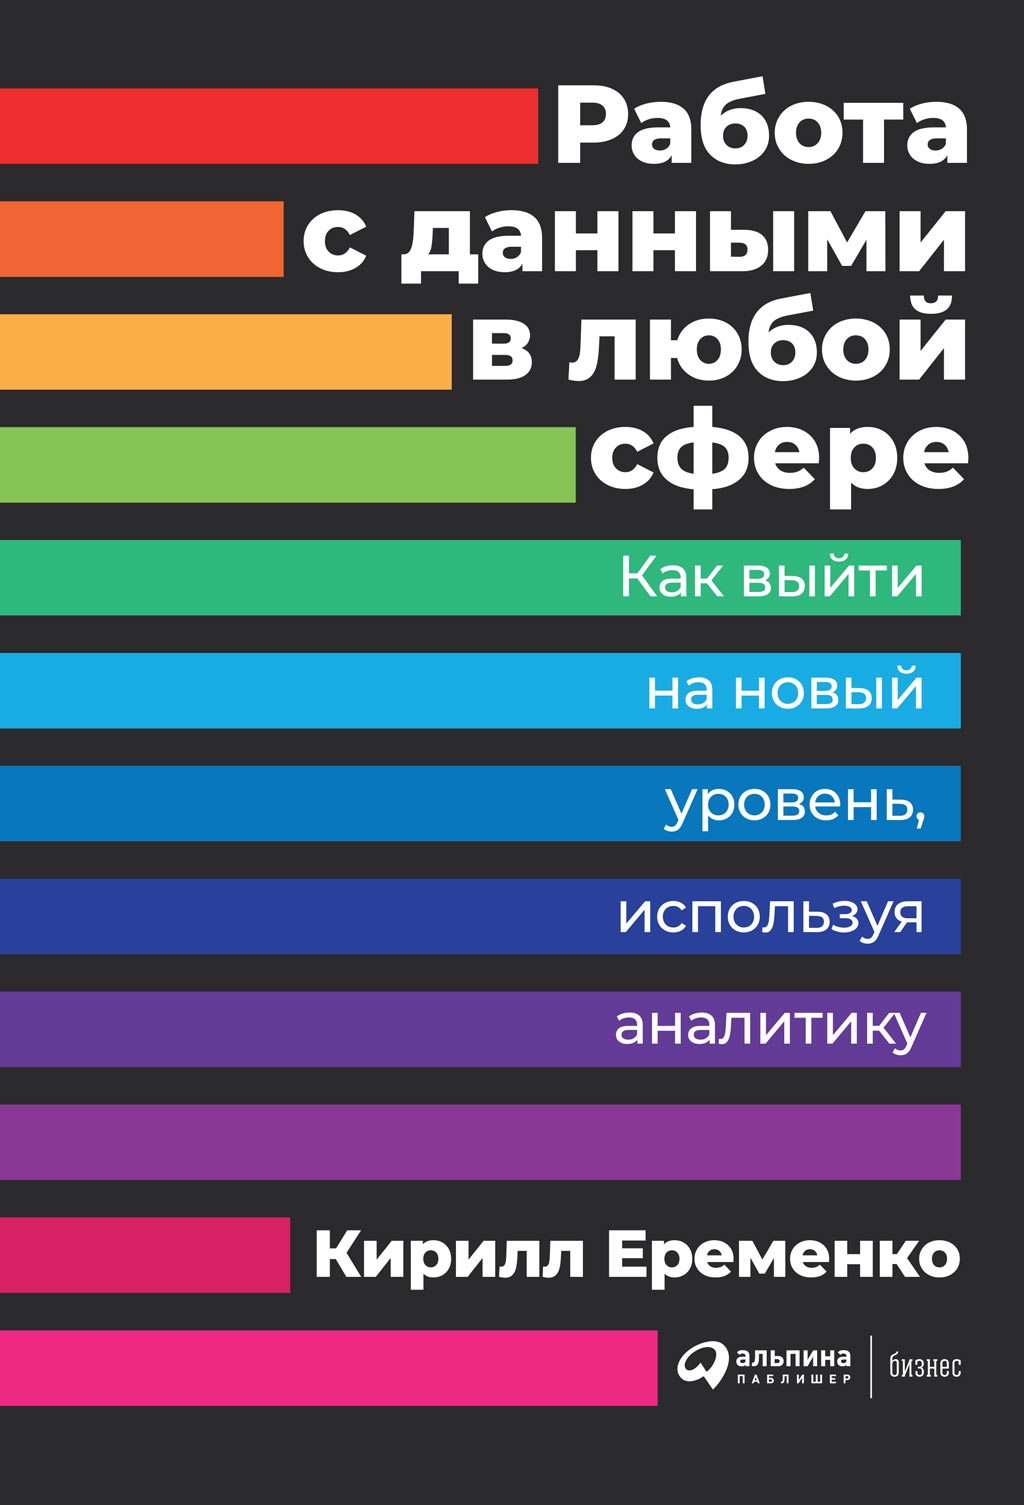 Книга Работа с данными в любой сфере из серии , созданная Кирилл Еременко, может относится к жанру Базы данных. Стоимость электронной книги Работа с данными в любой сфере с идентификатором 43367095 составляет 379.00 руб.